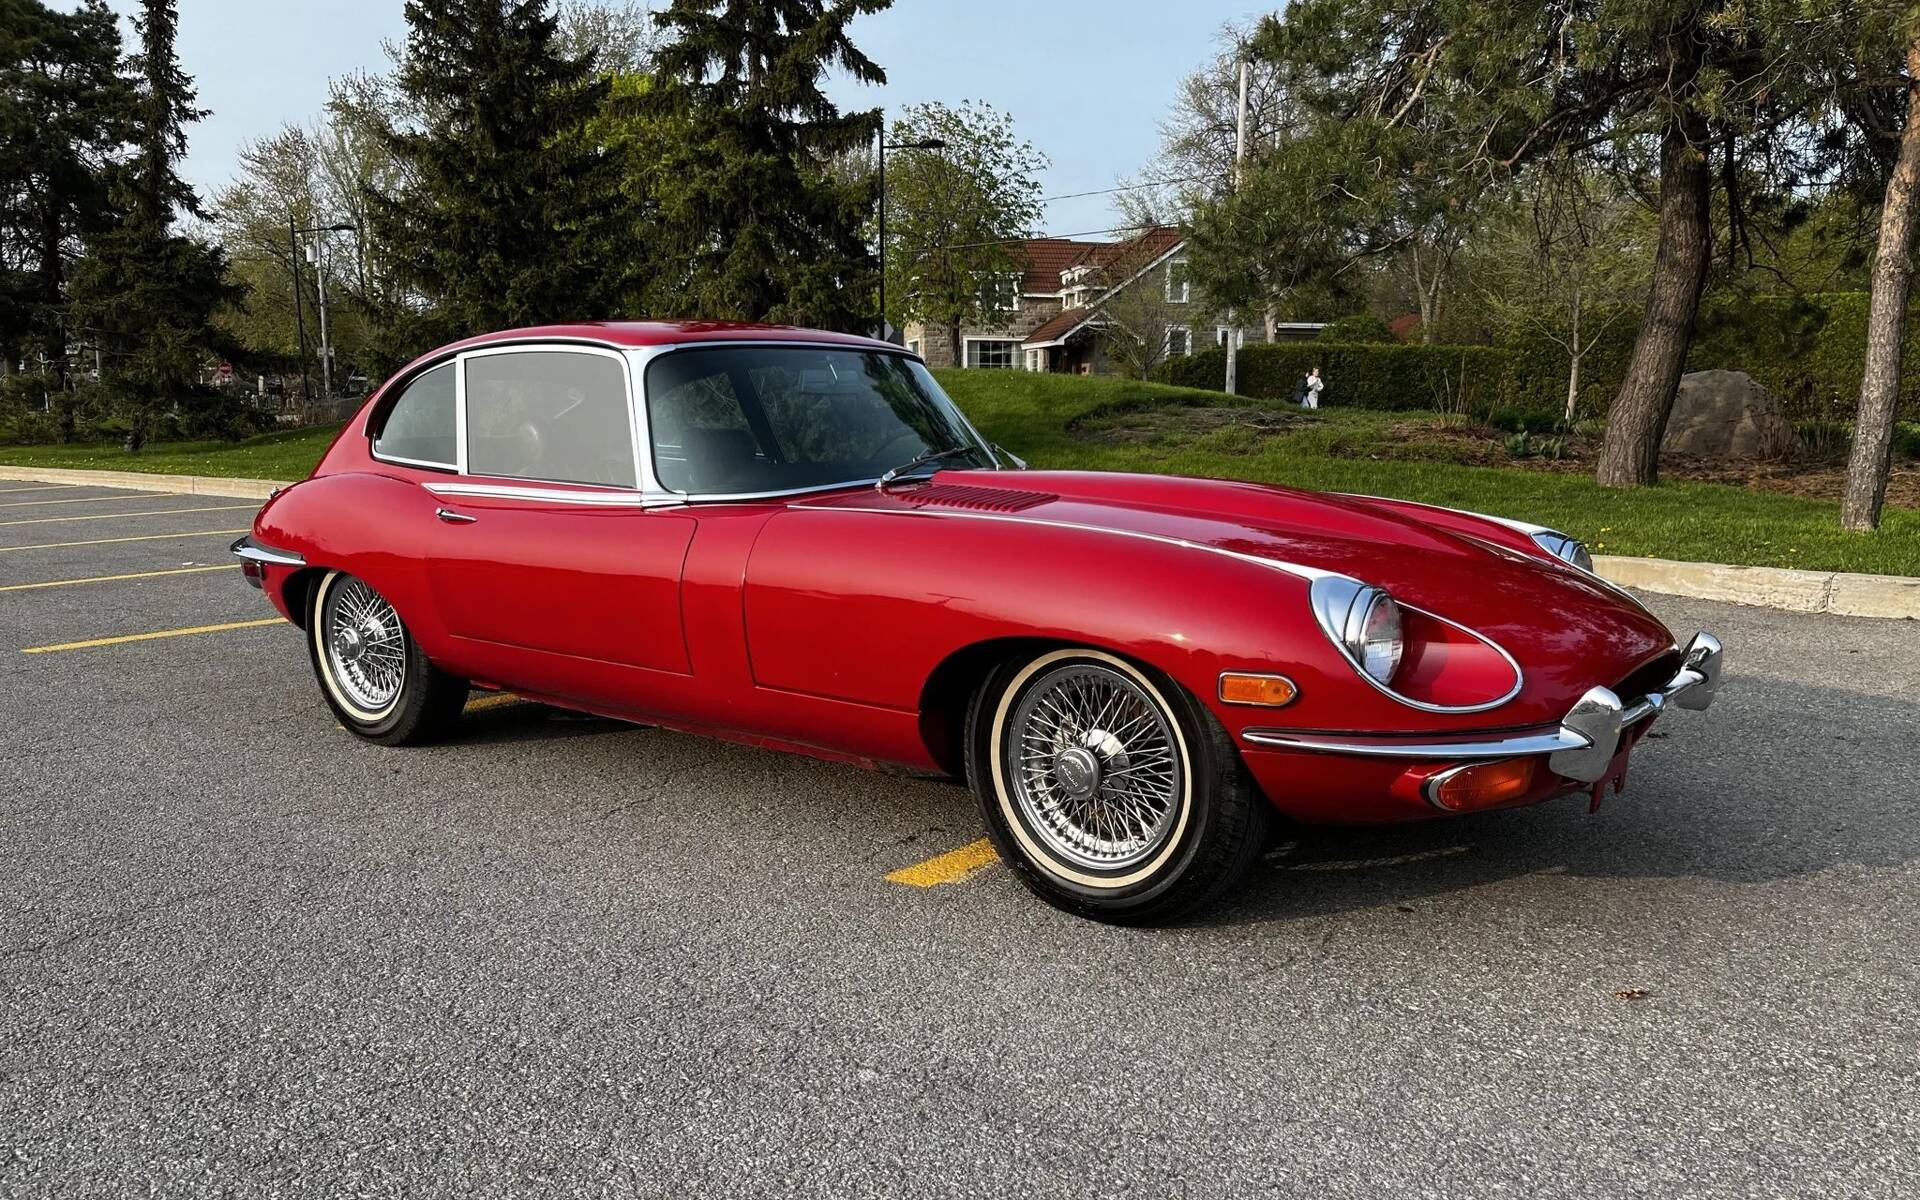 Cette ravissante Jaguar XKE 1969 est à vendre près de Montréal 574660-cette-ravissante-jaguar-xke-1969-est-a-vendre-pres-de-montreal